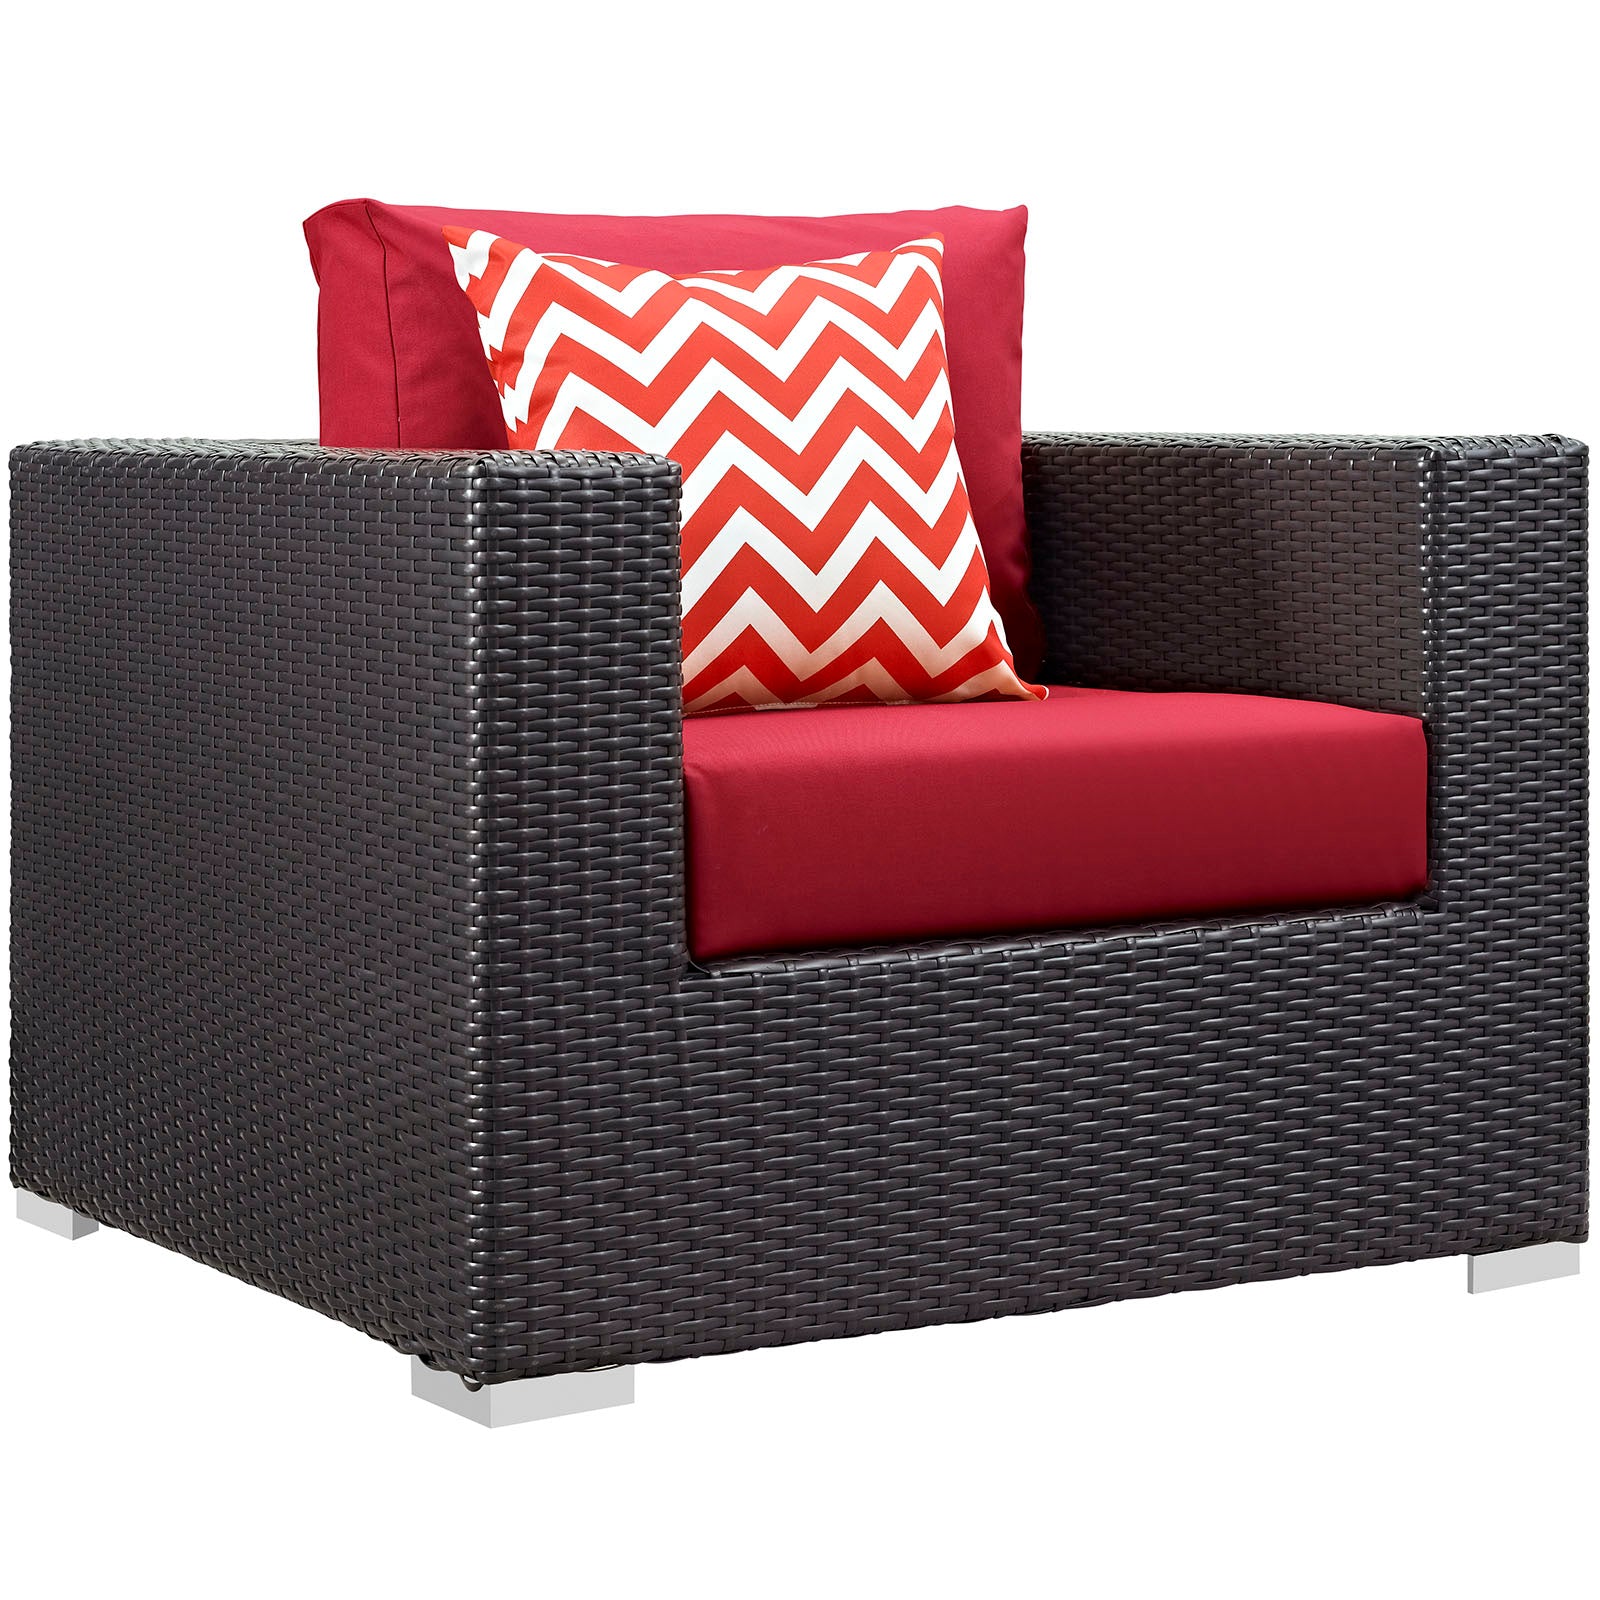 Modway Outdoor Conversation Sets - Convene 3 Piece Outdoor Patio Sofa Set Espresso in Red